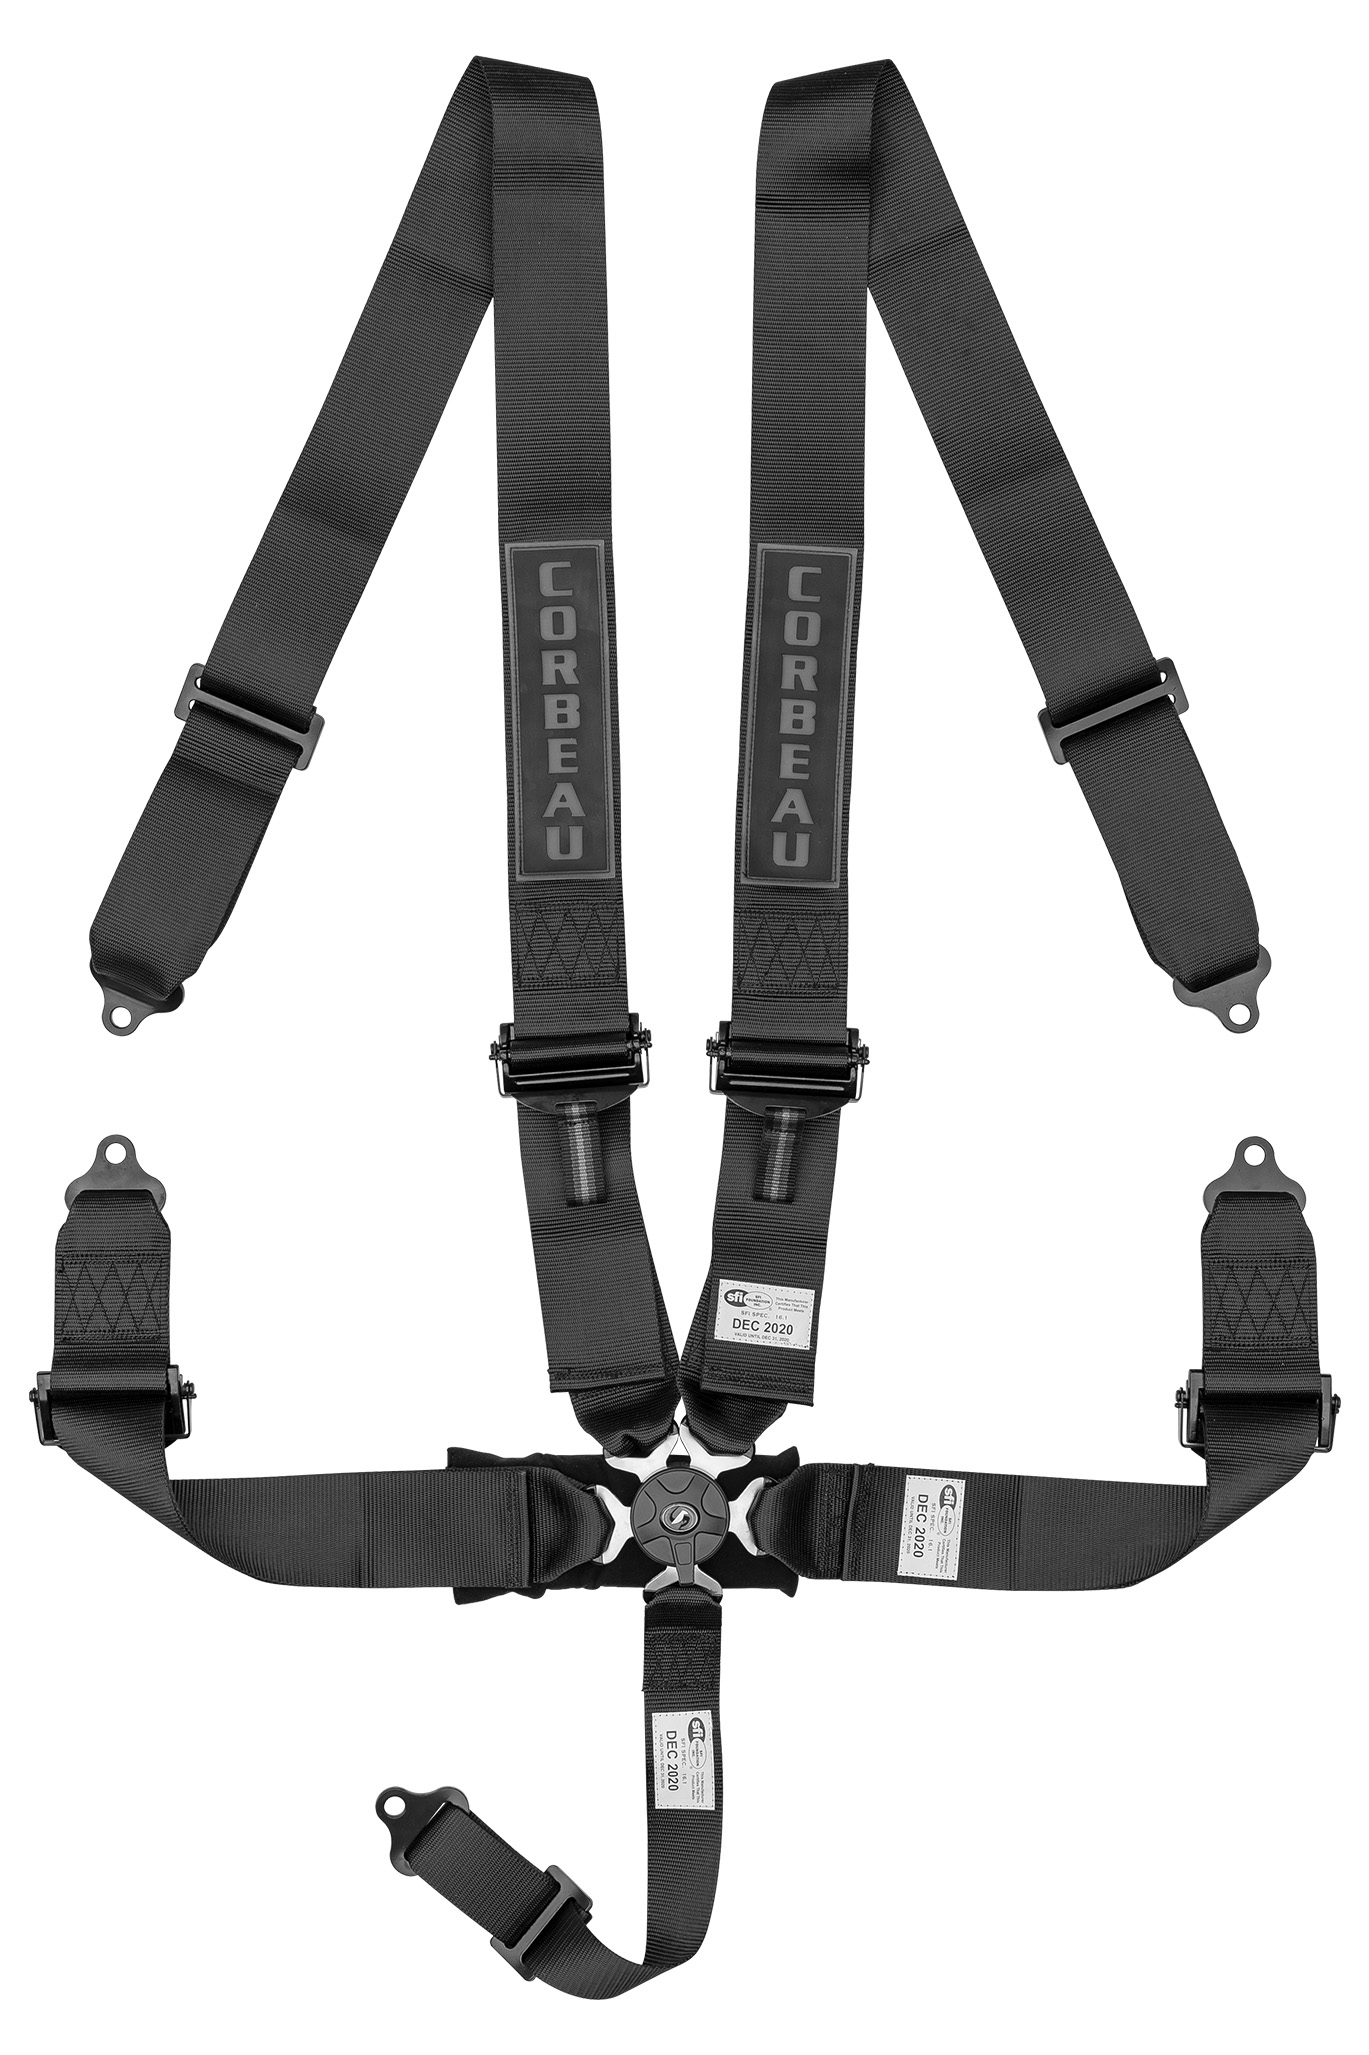 5-Point 3 Camlock Harness Belts - Corbeau USA